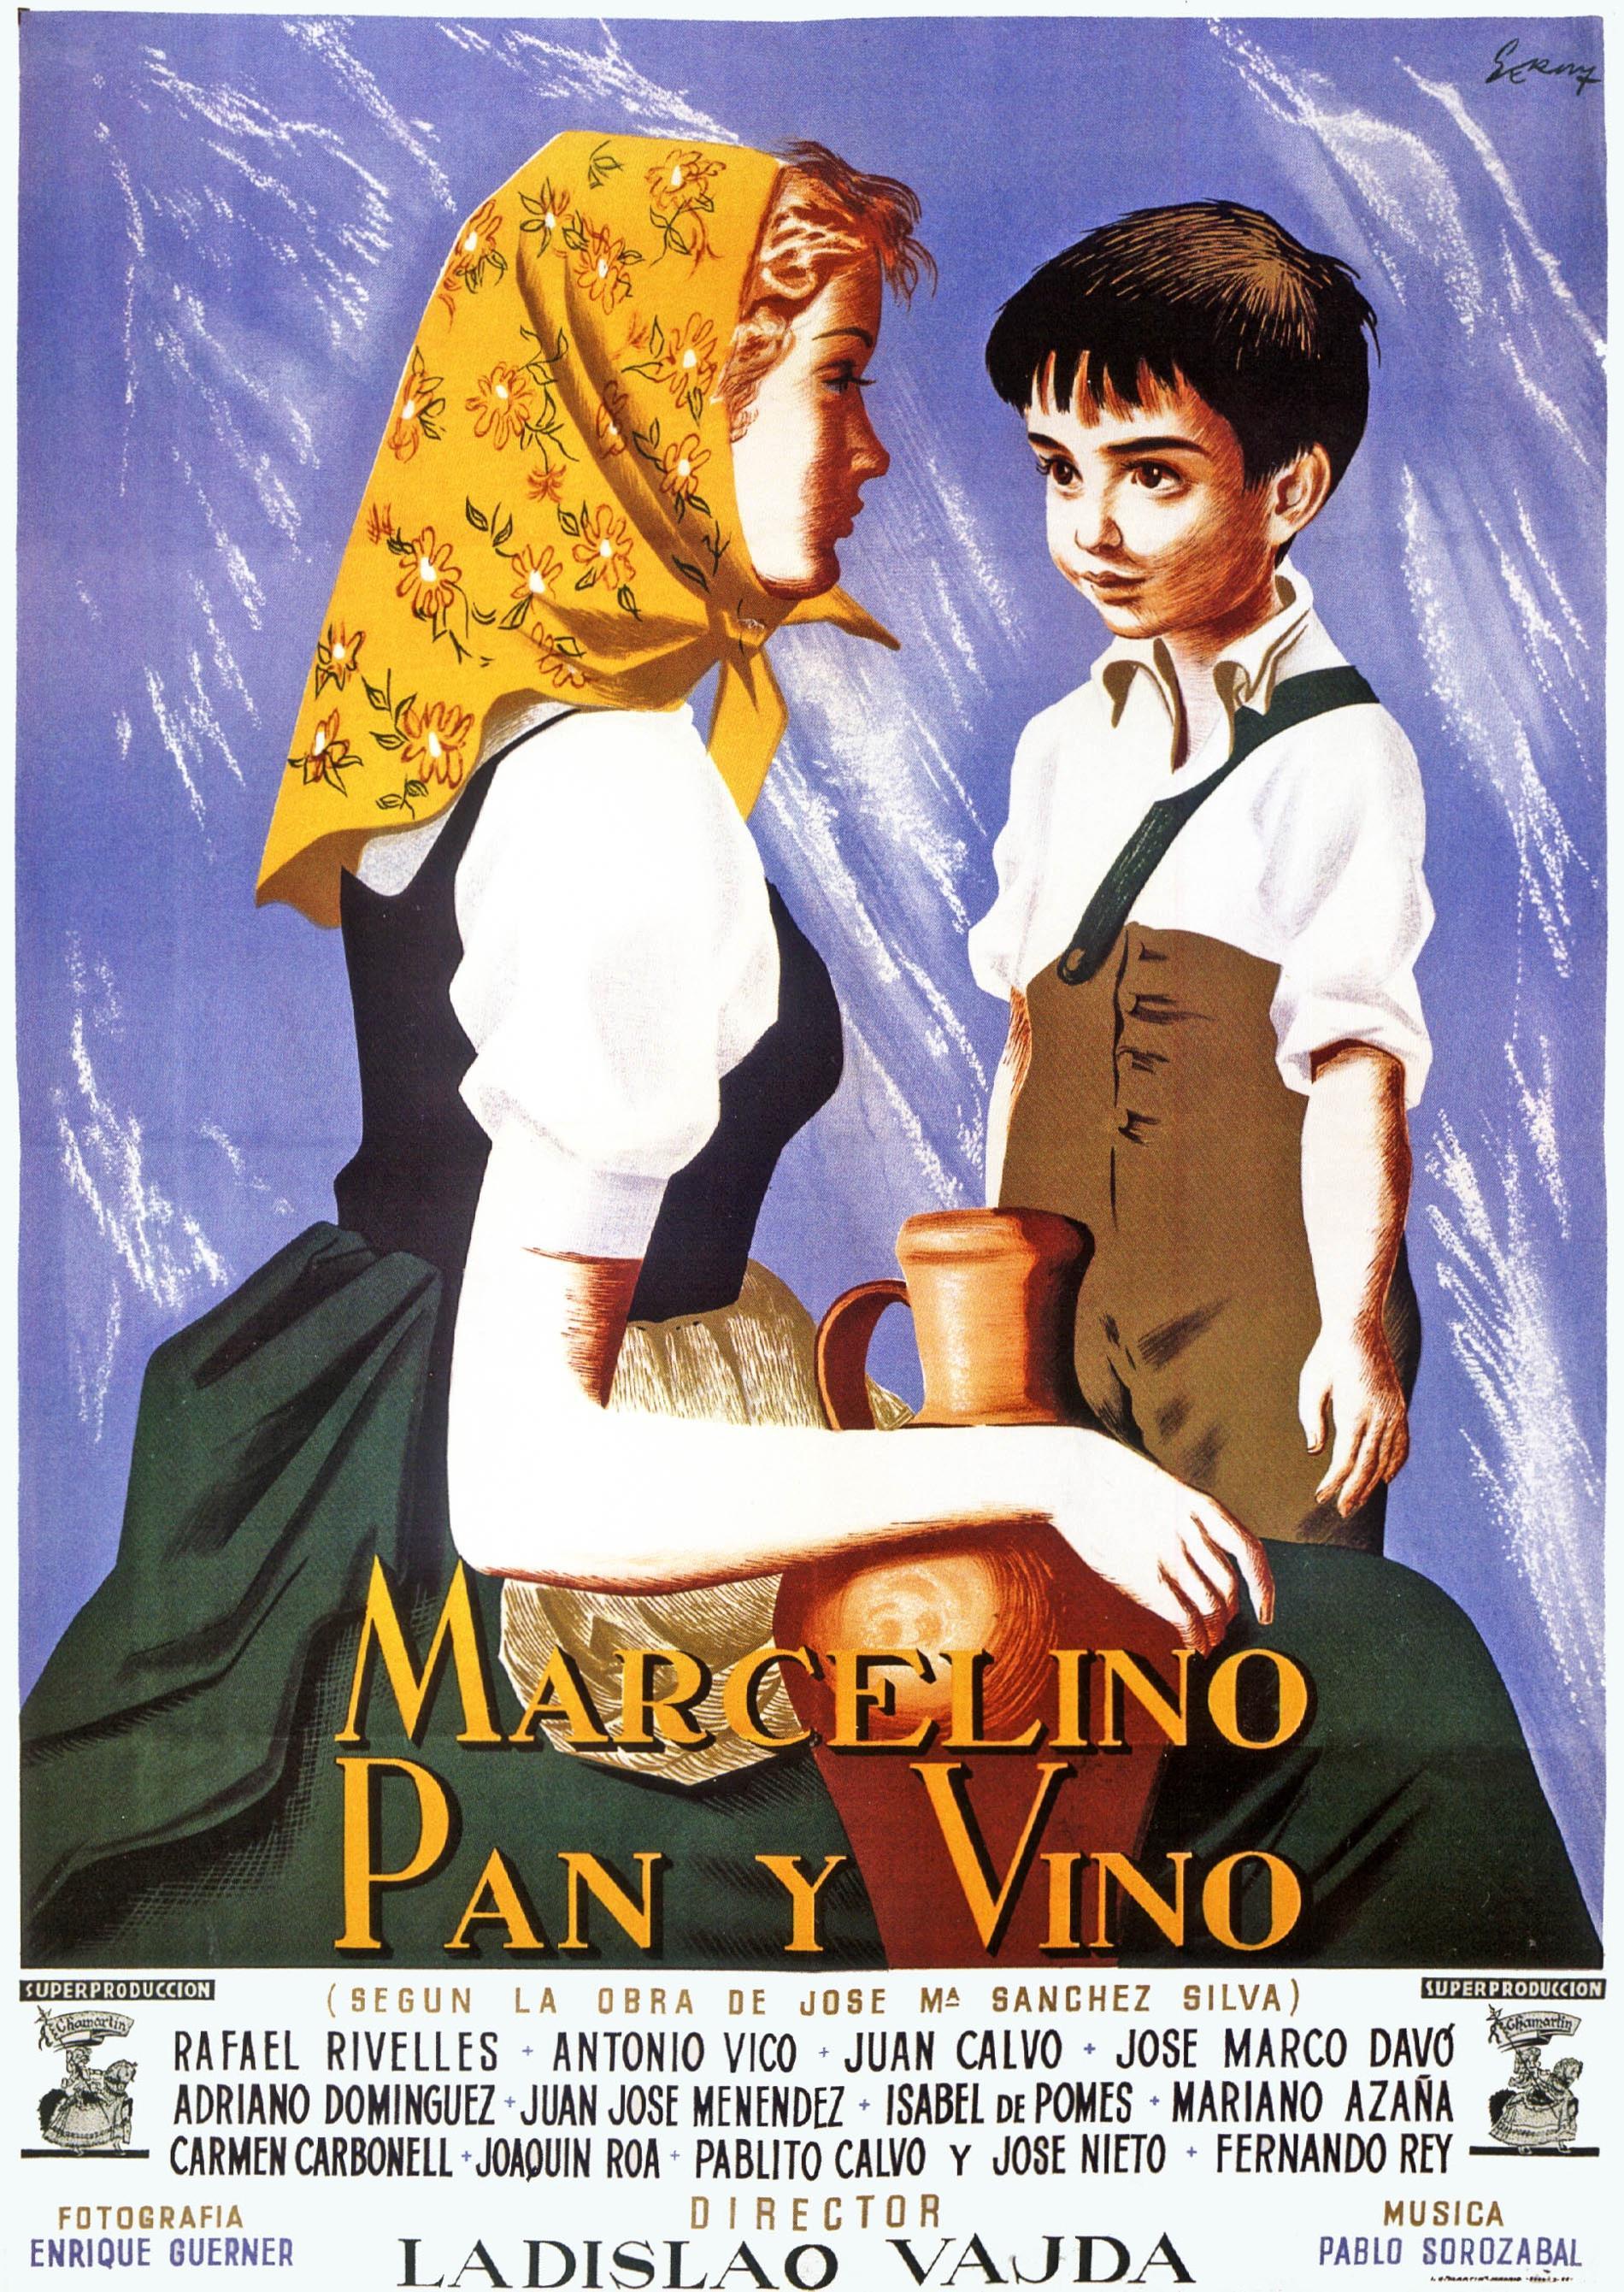 Постер фильма Марселино, хлеб и вино | Marcelino pan y vino